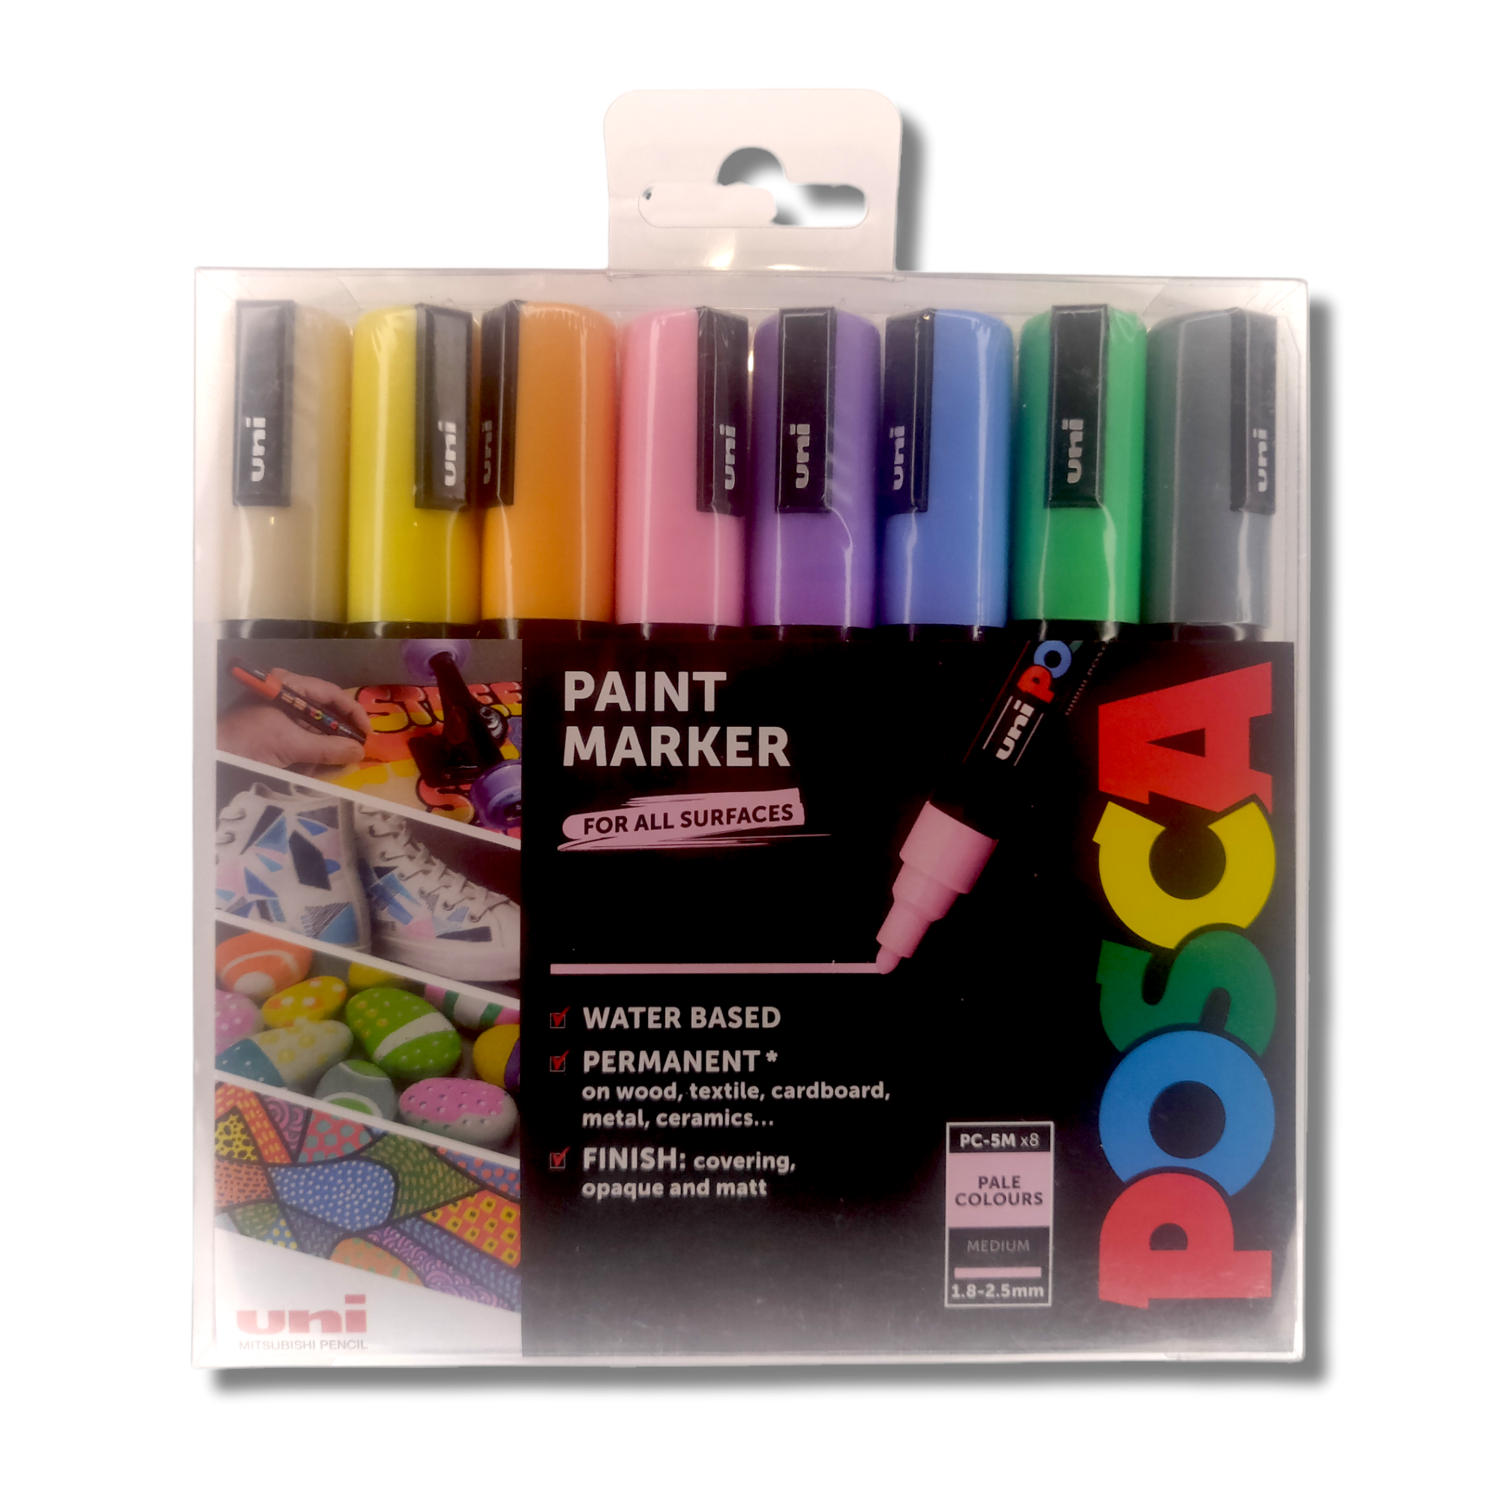 POSCA 8x Medium Pale Colours Paint Marker Pens - For All Surfaces (PC-5M)